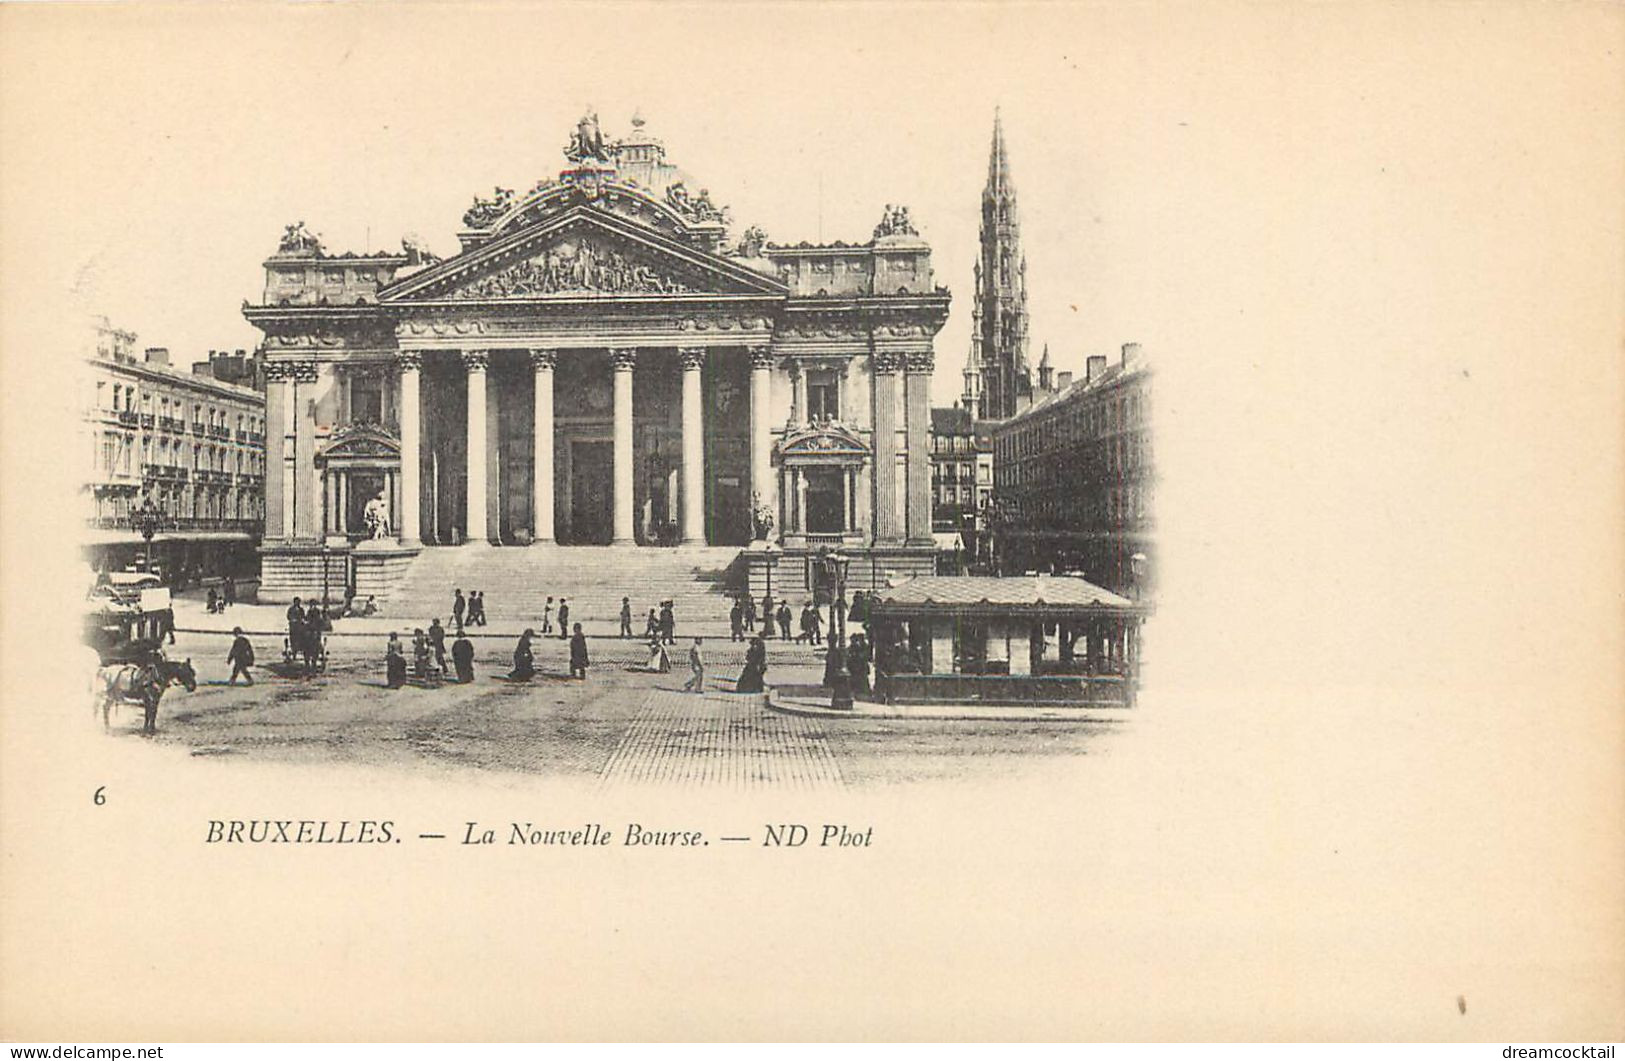 Superbe lot de 10 cpa BRUXELLES vers 1900. Maison du Roi, Manneken-Piss, Porte Hal, Colonne Congrès, Bourse, Comtes...